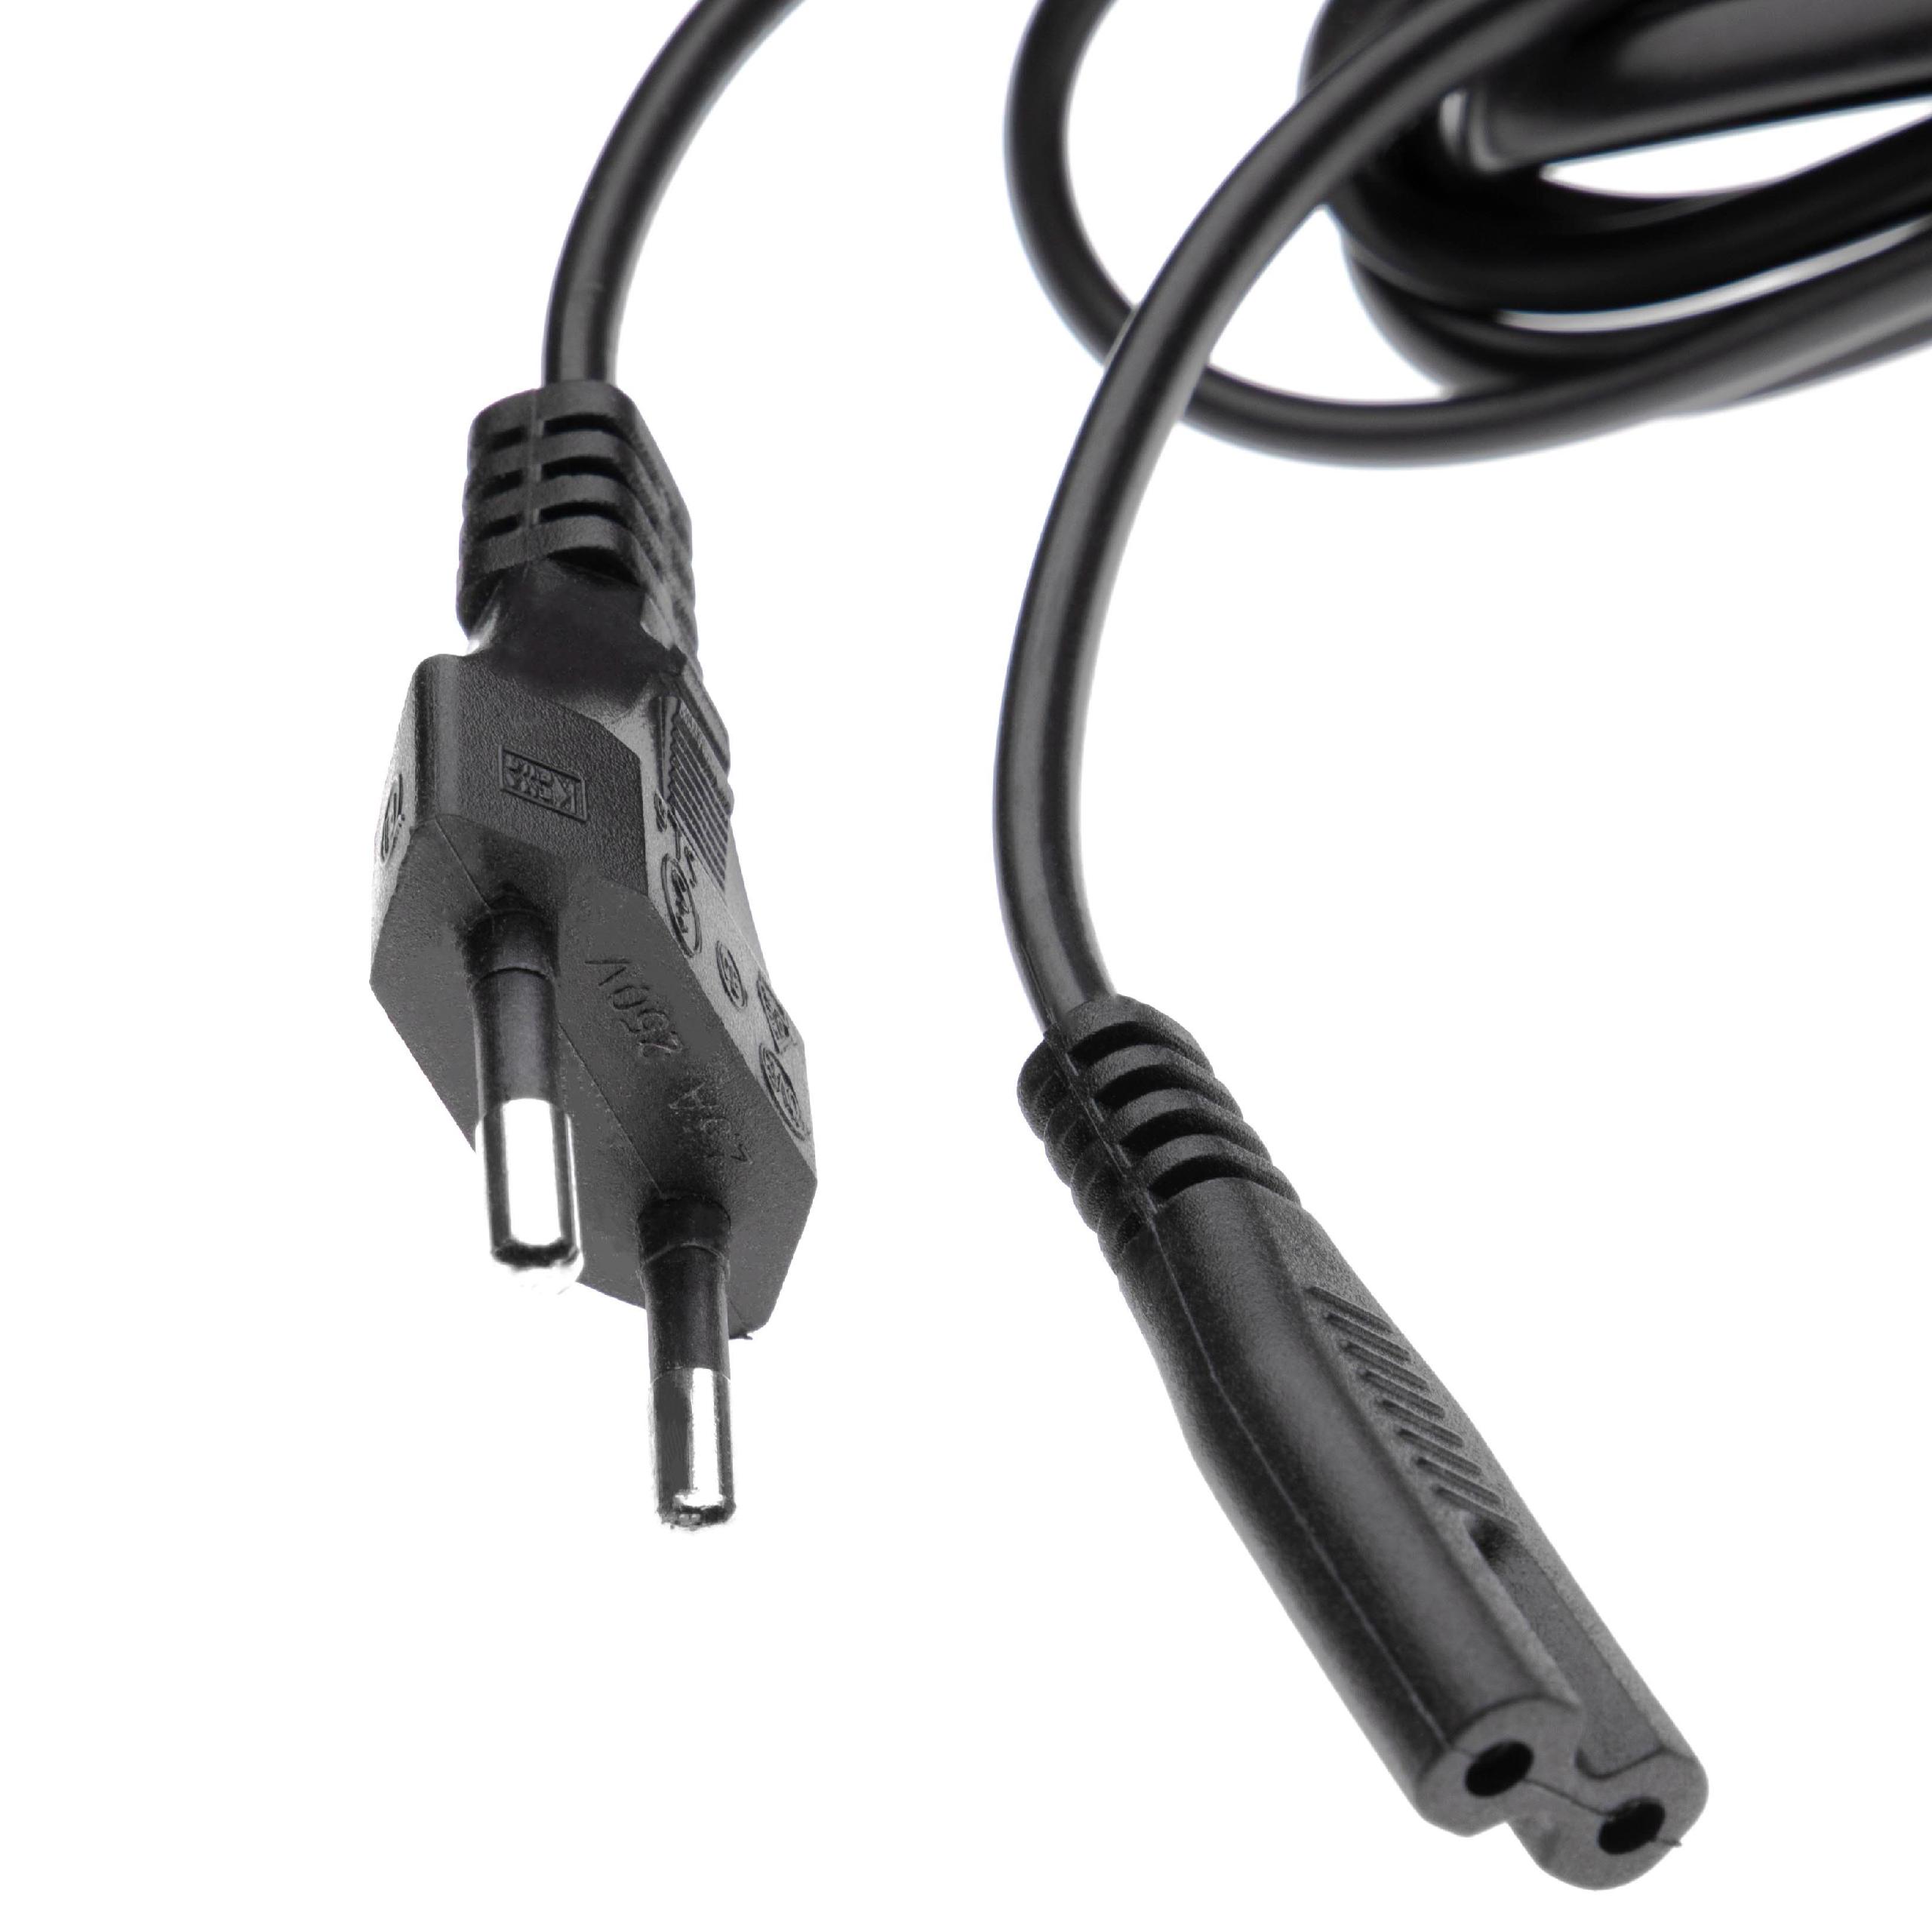 Cable de red C7 euroconector compatible con dispositivo IEC por ej. PC, monitor, ordenador - 1,2 m